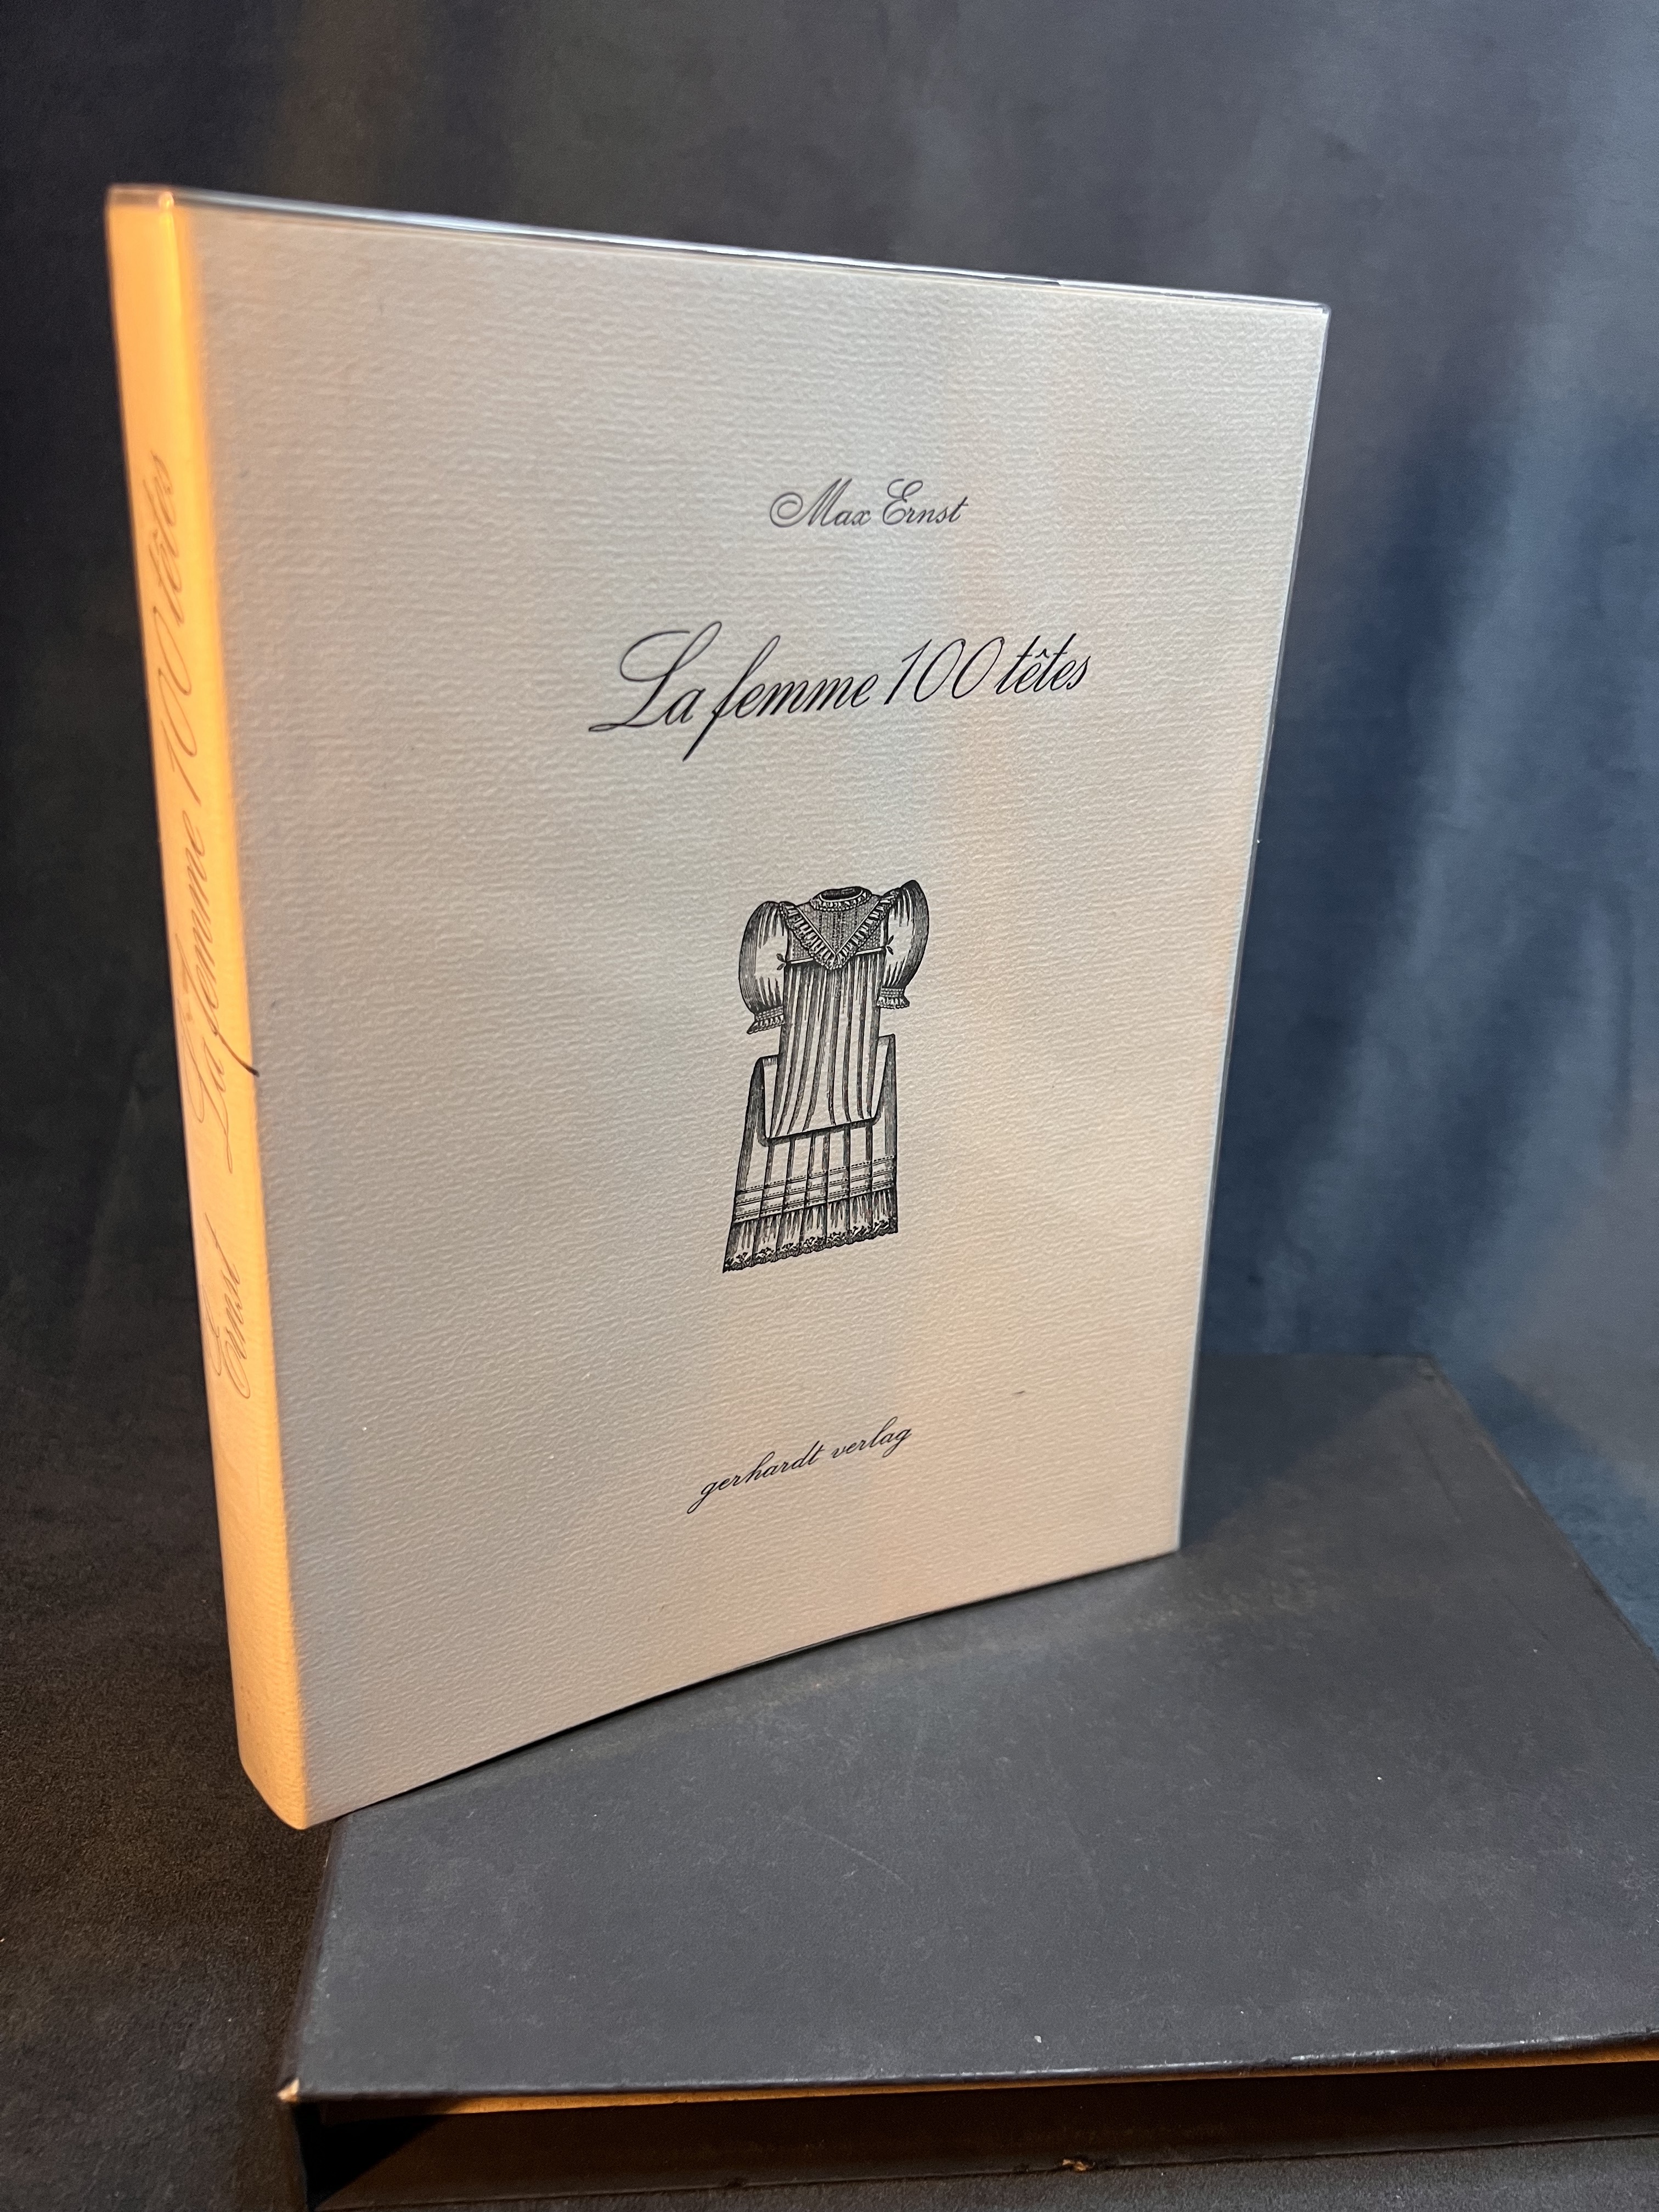 La femme 100 têtes - Max Ernst and Andre Breton